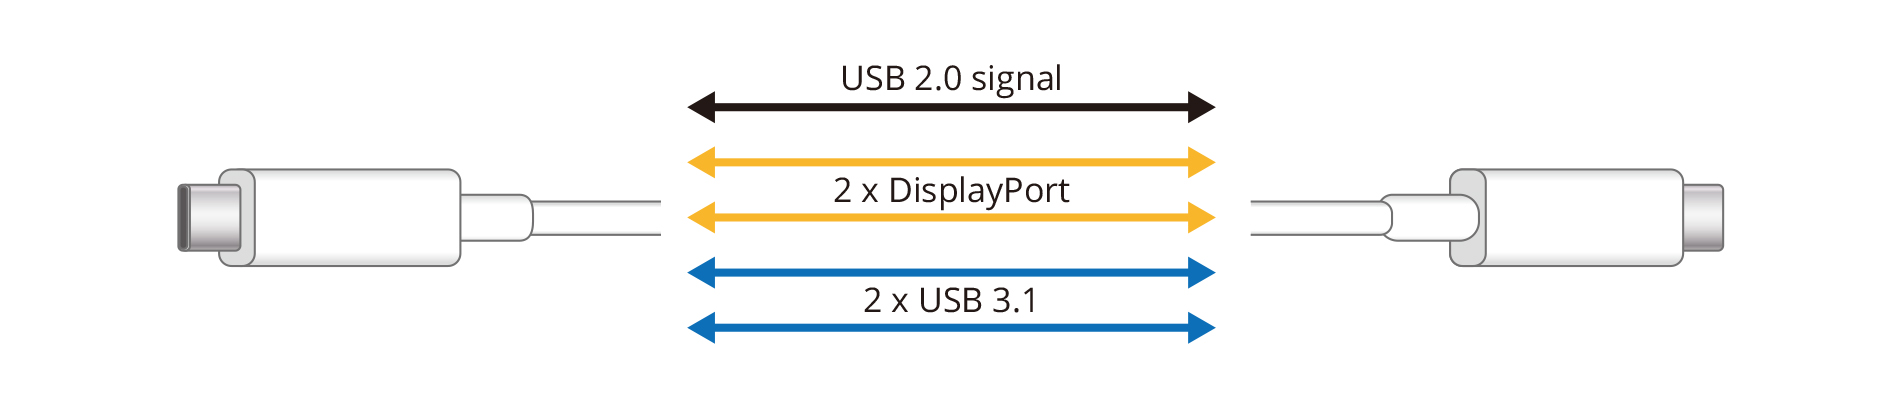 4K UHD 30Hz / USB3.1 Setting